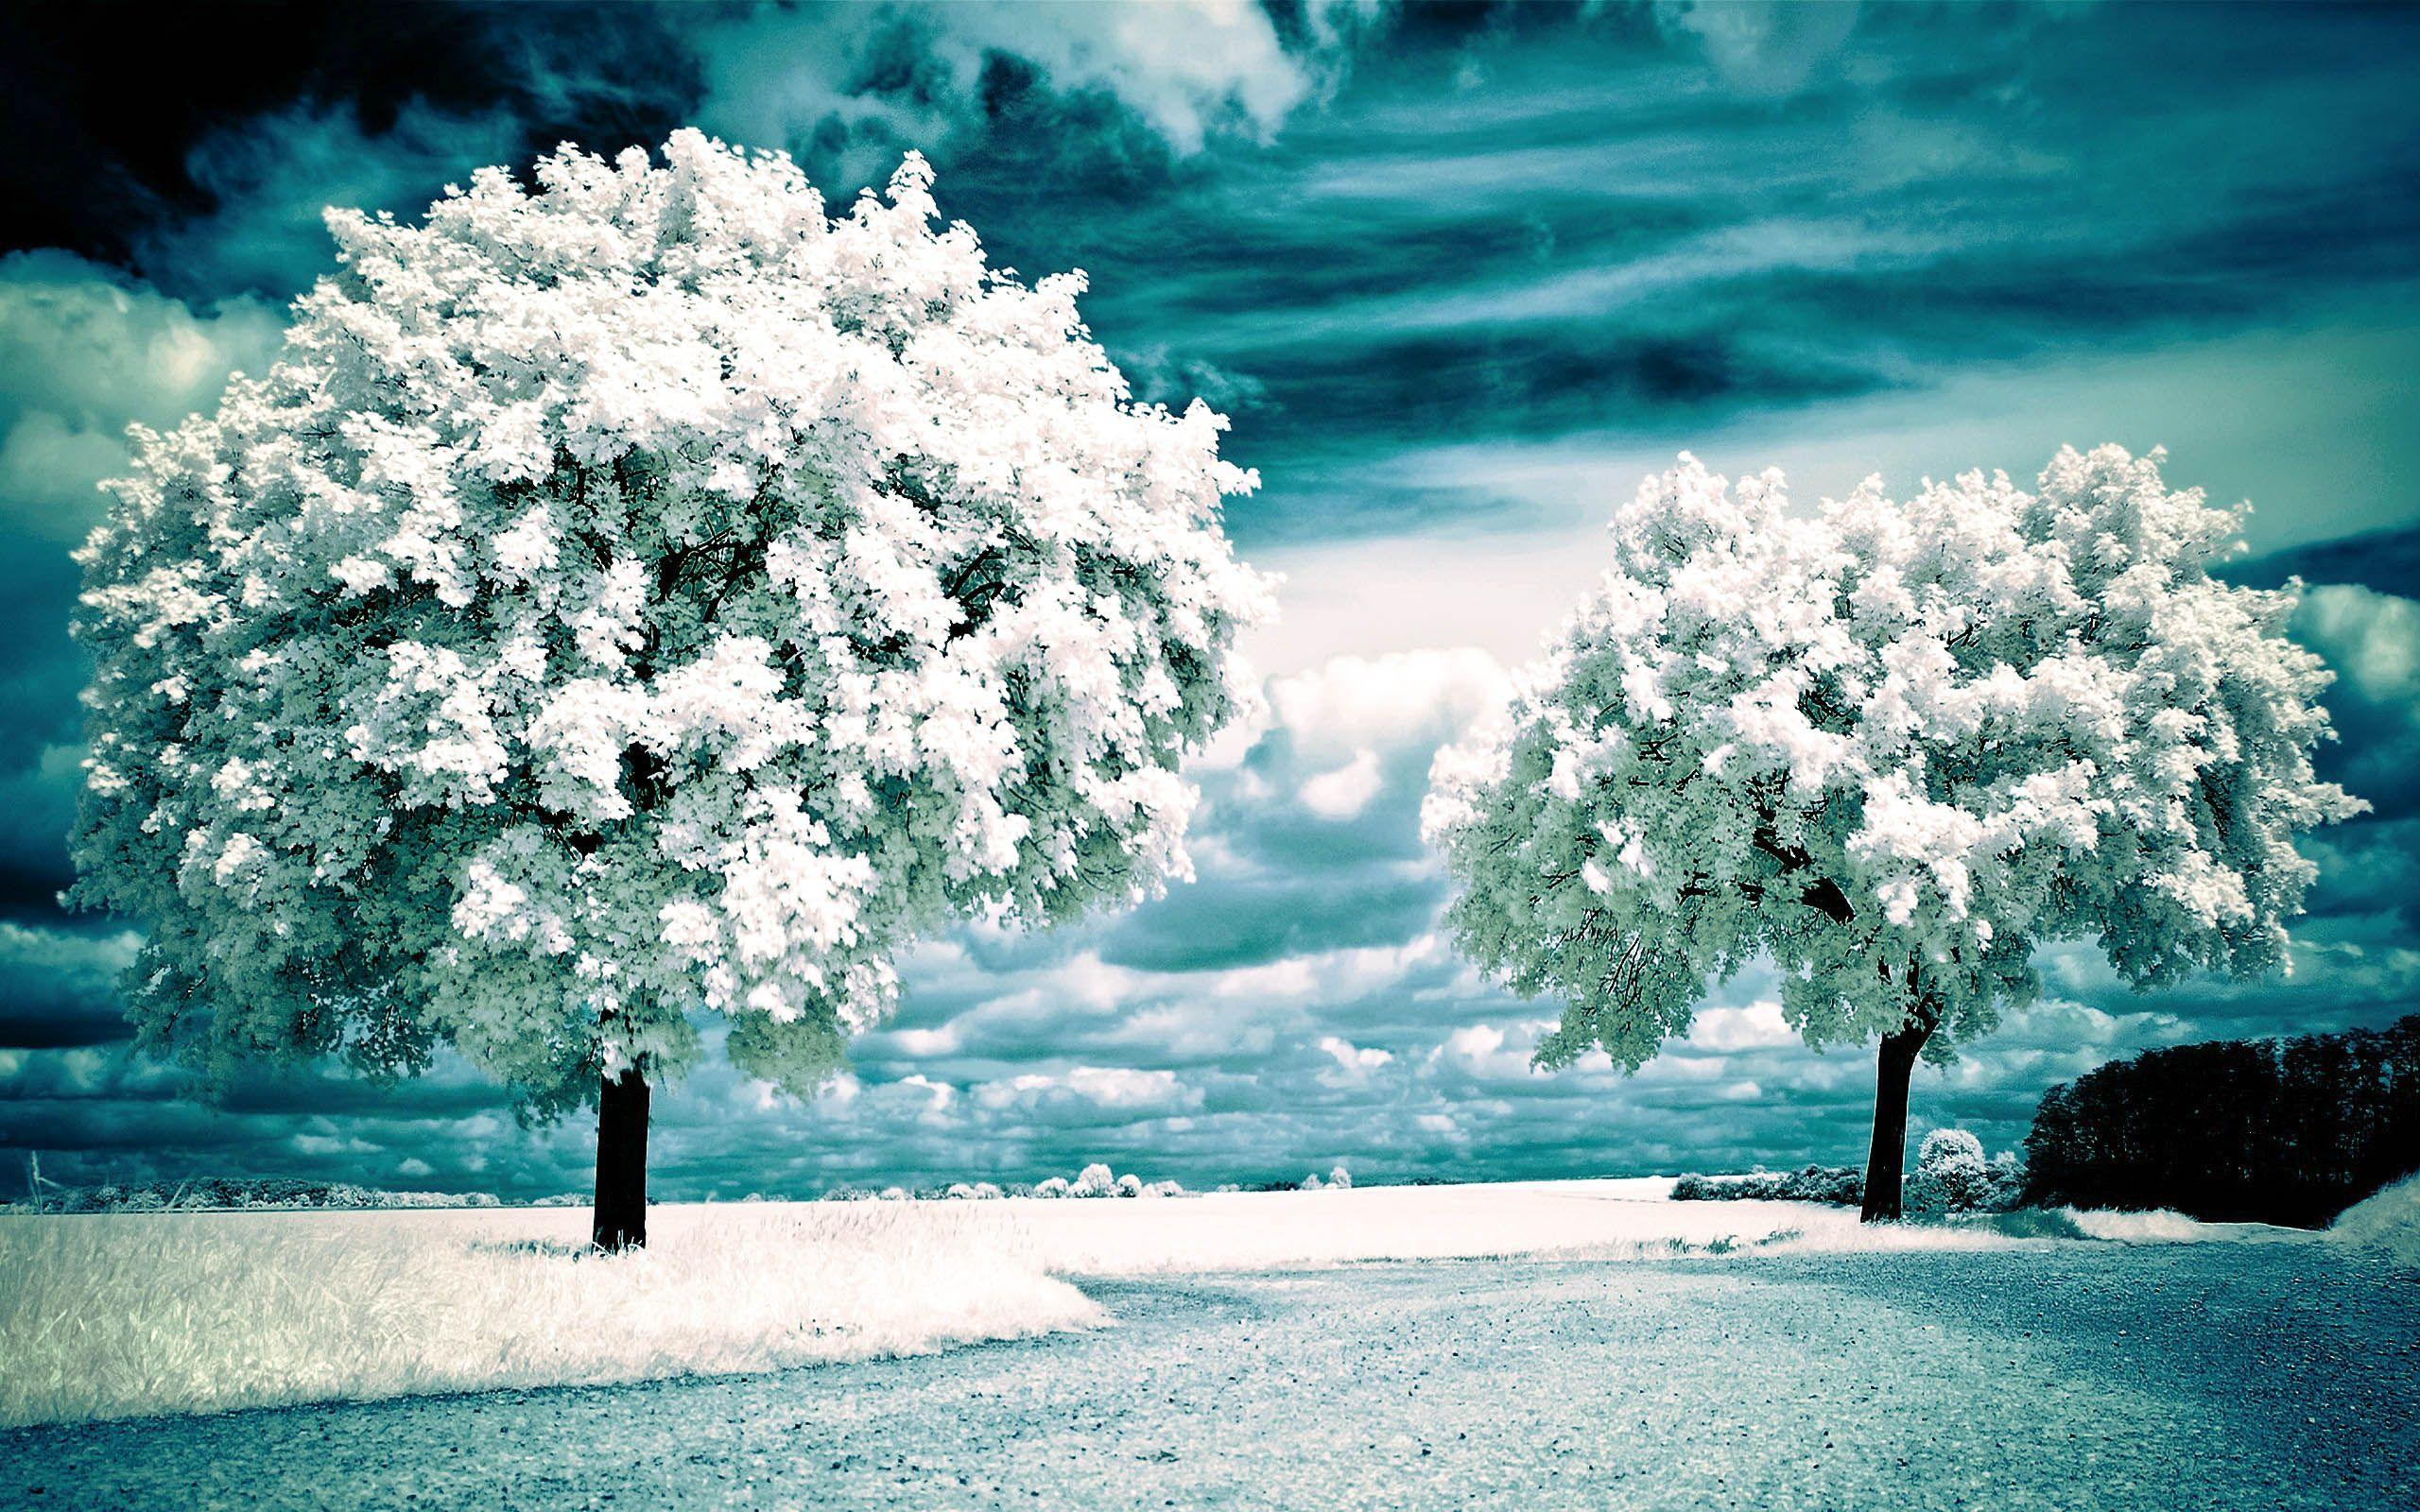 Beautiful Hd Scenery Wallpaper Hd Scenery. Winter Landscape